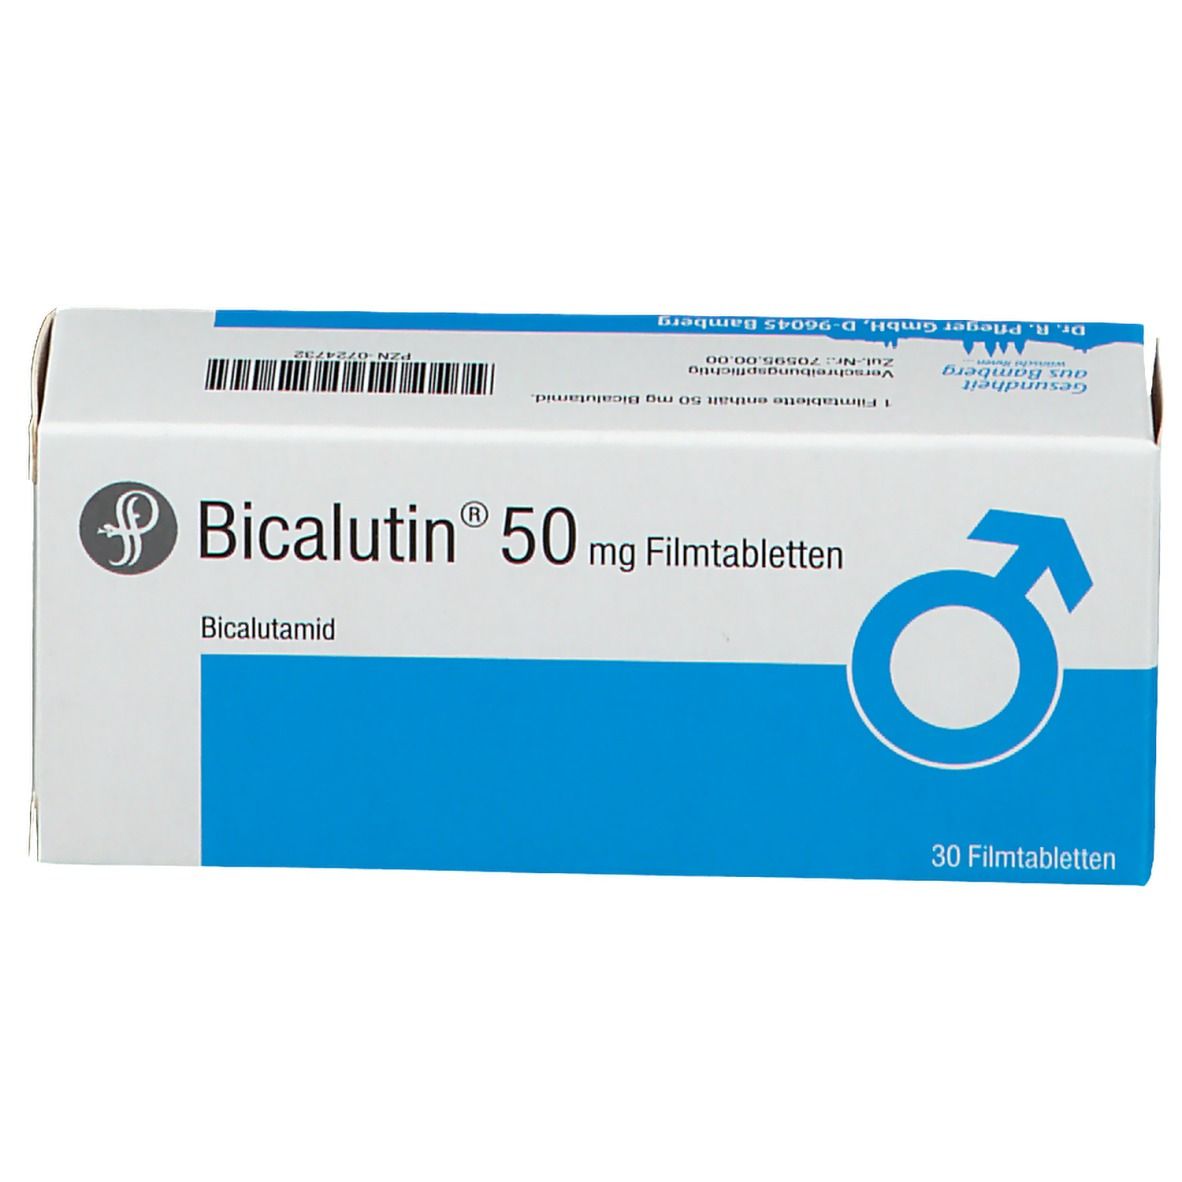 Bicalutin® 50 mg